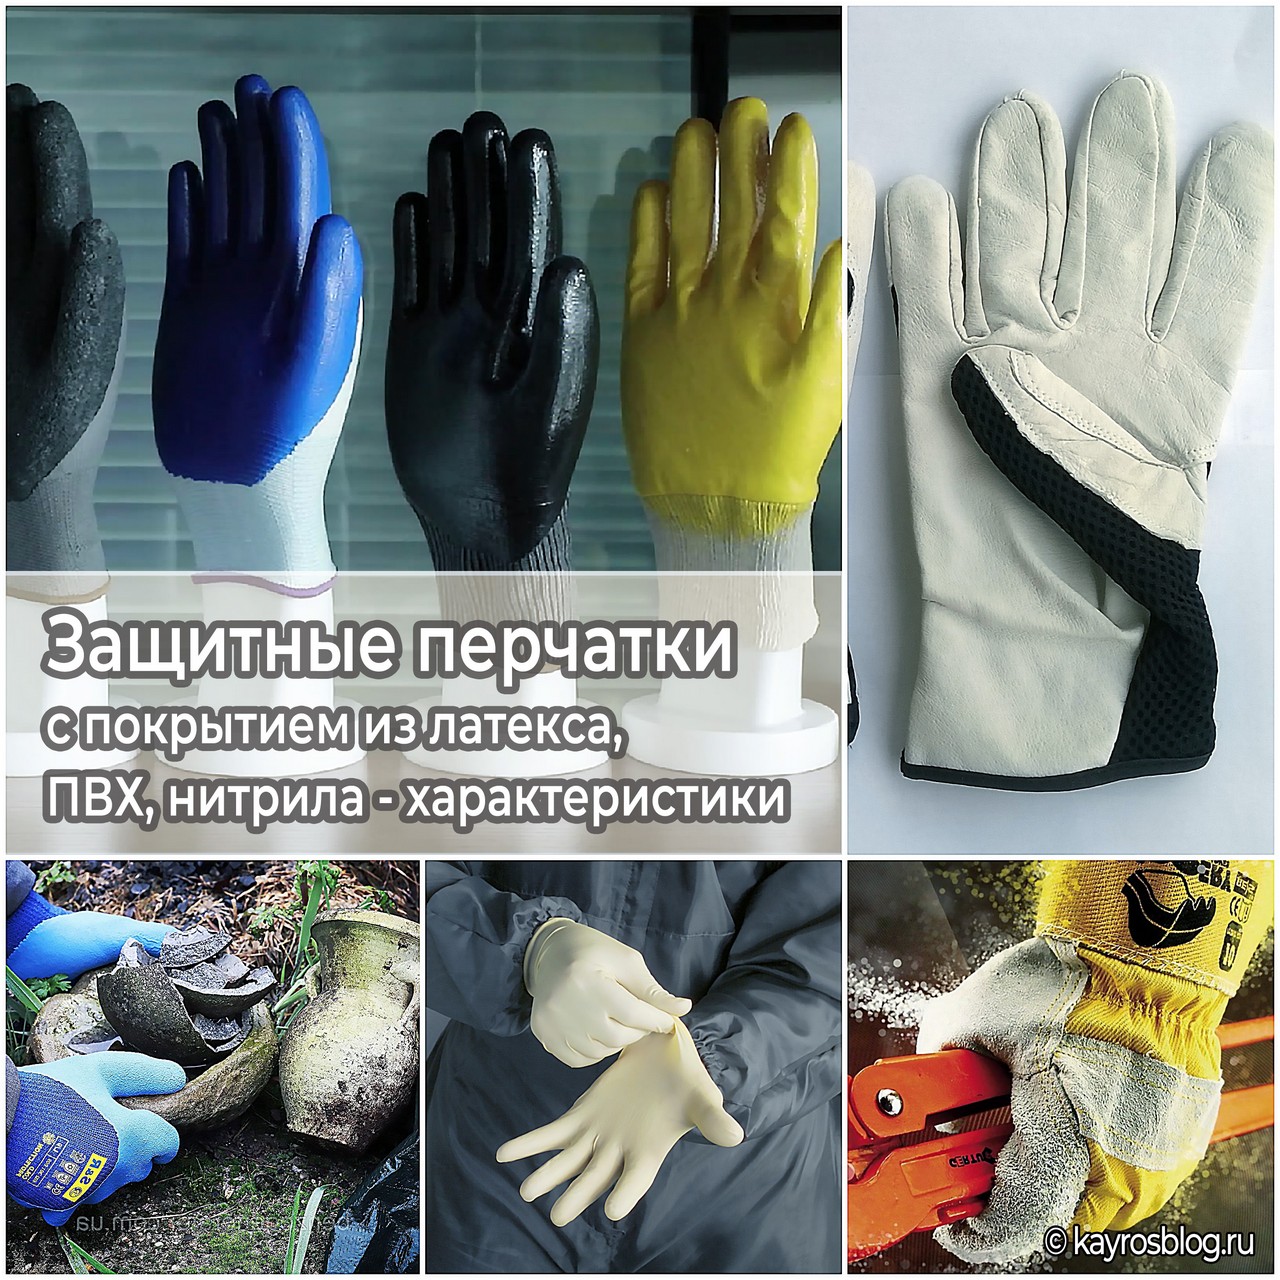 Защитные перчатки с покрытием из латекса, ПВХ, нитрила - характеристики